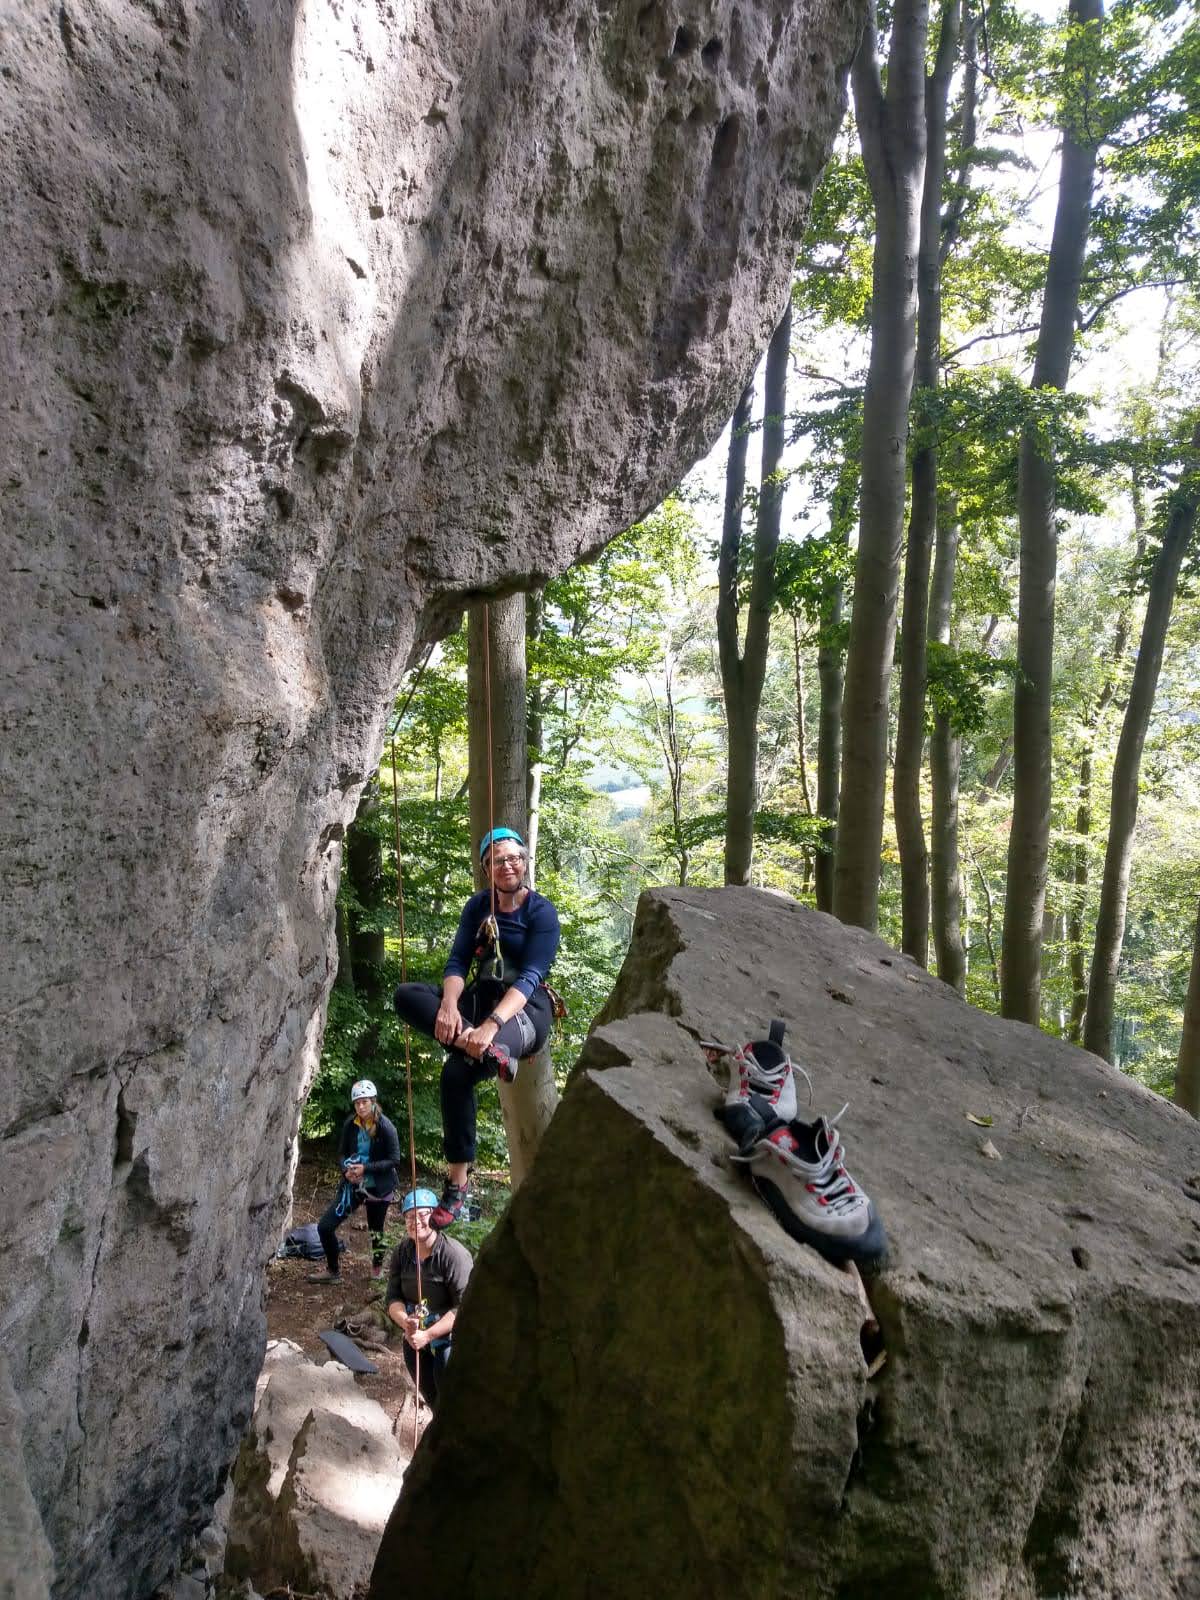 FÄLLT AUS: Erste Kletterschritte und Erfahrungen am Fels